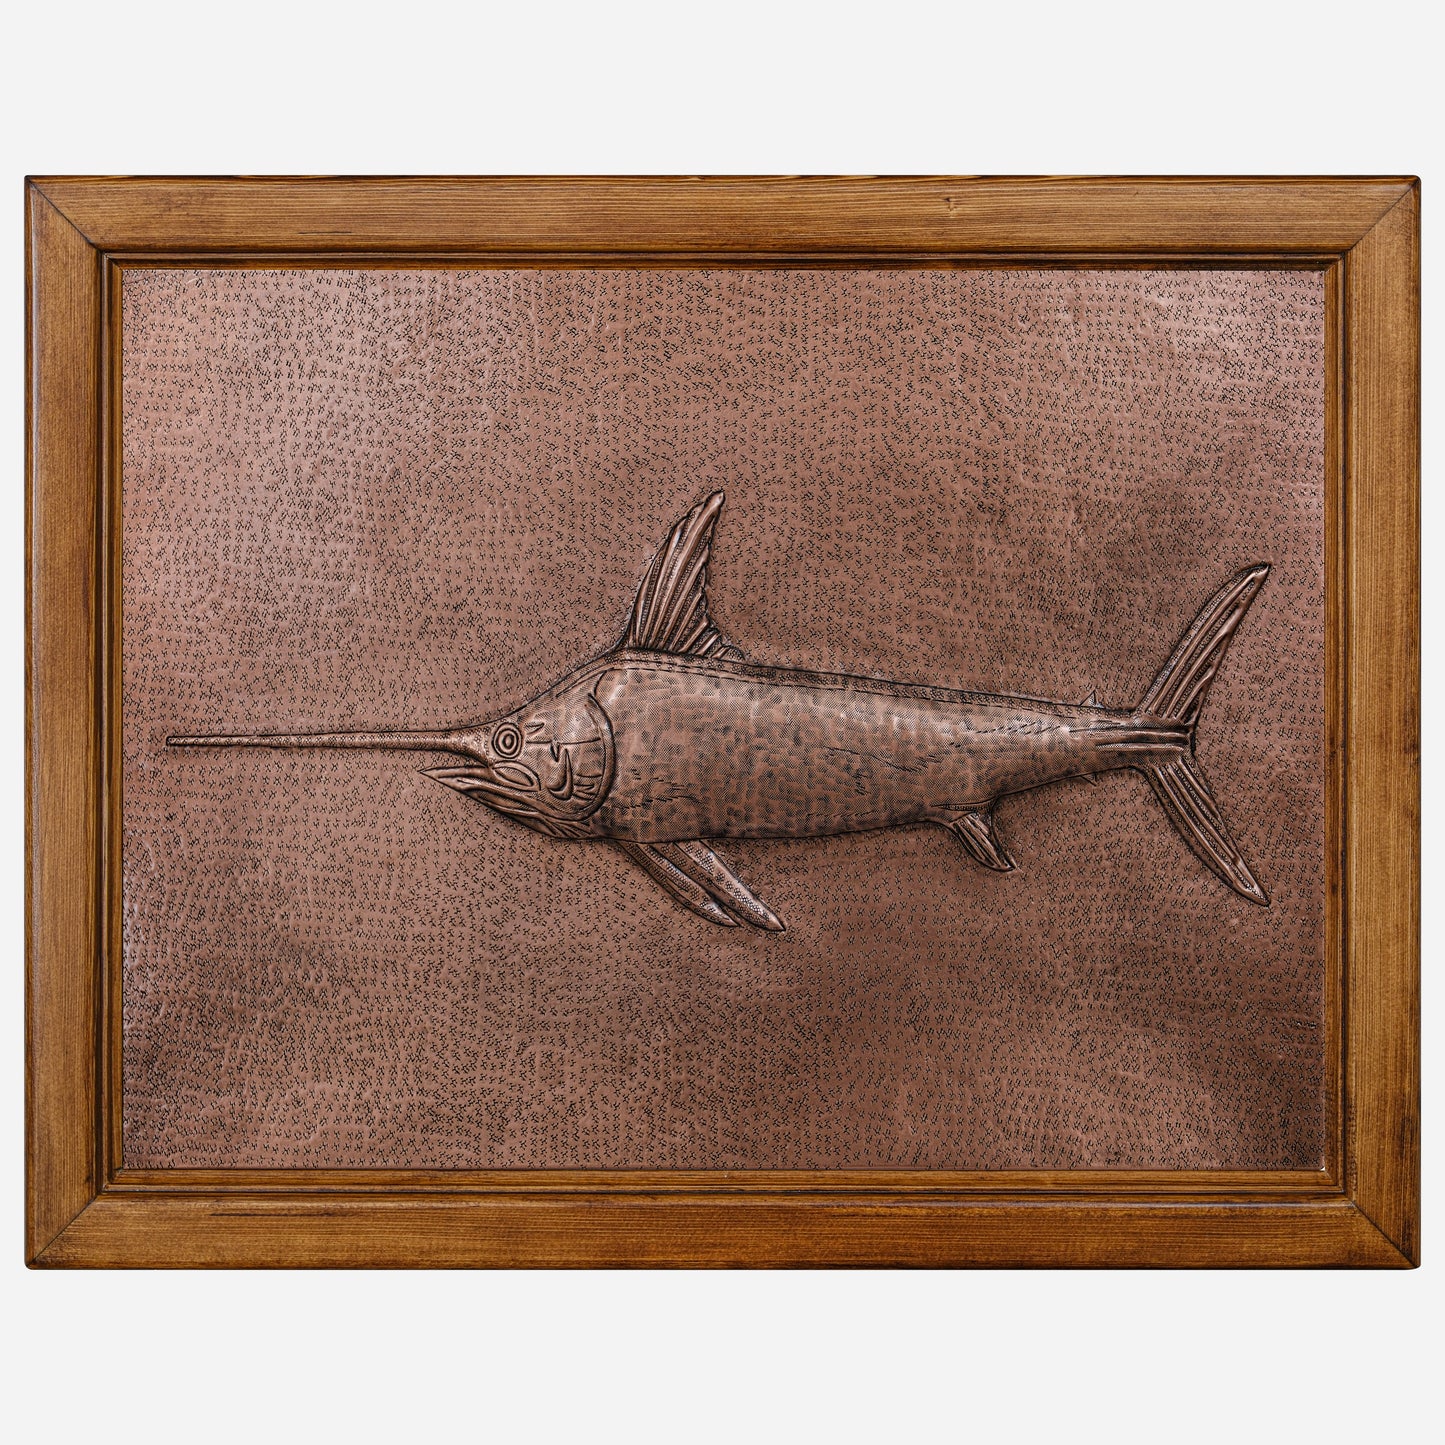 Framed Copper Artwork (Swordfish)